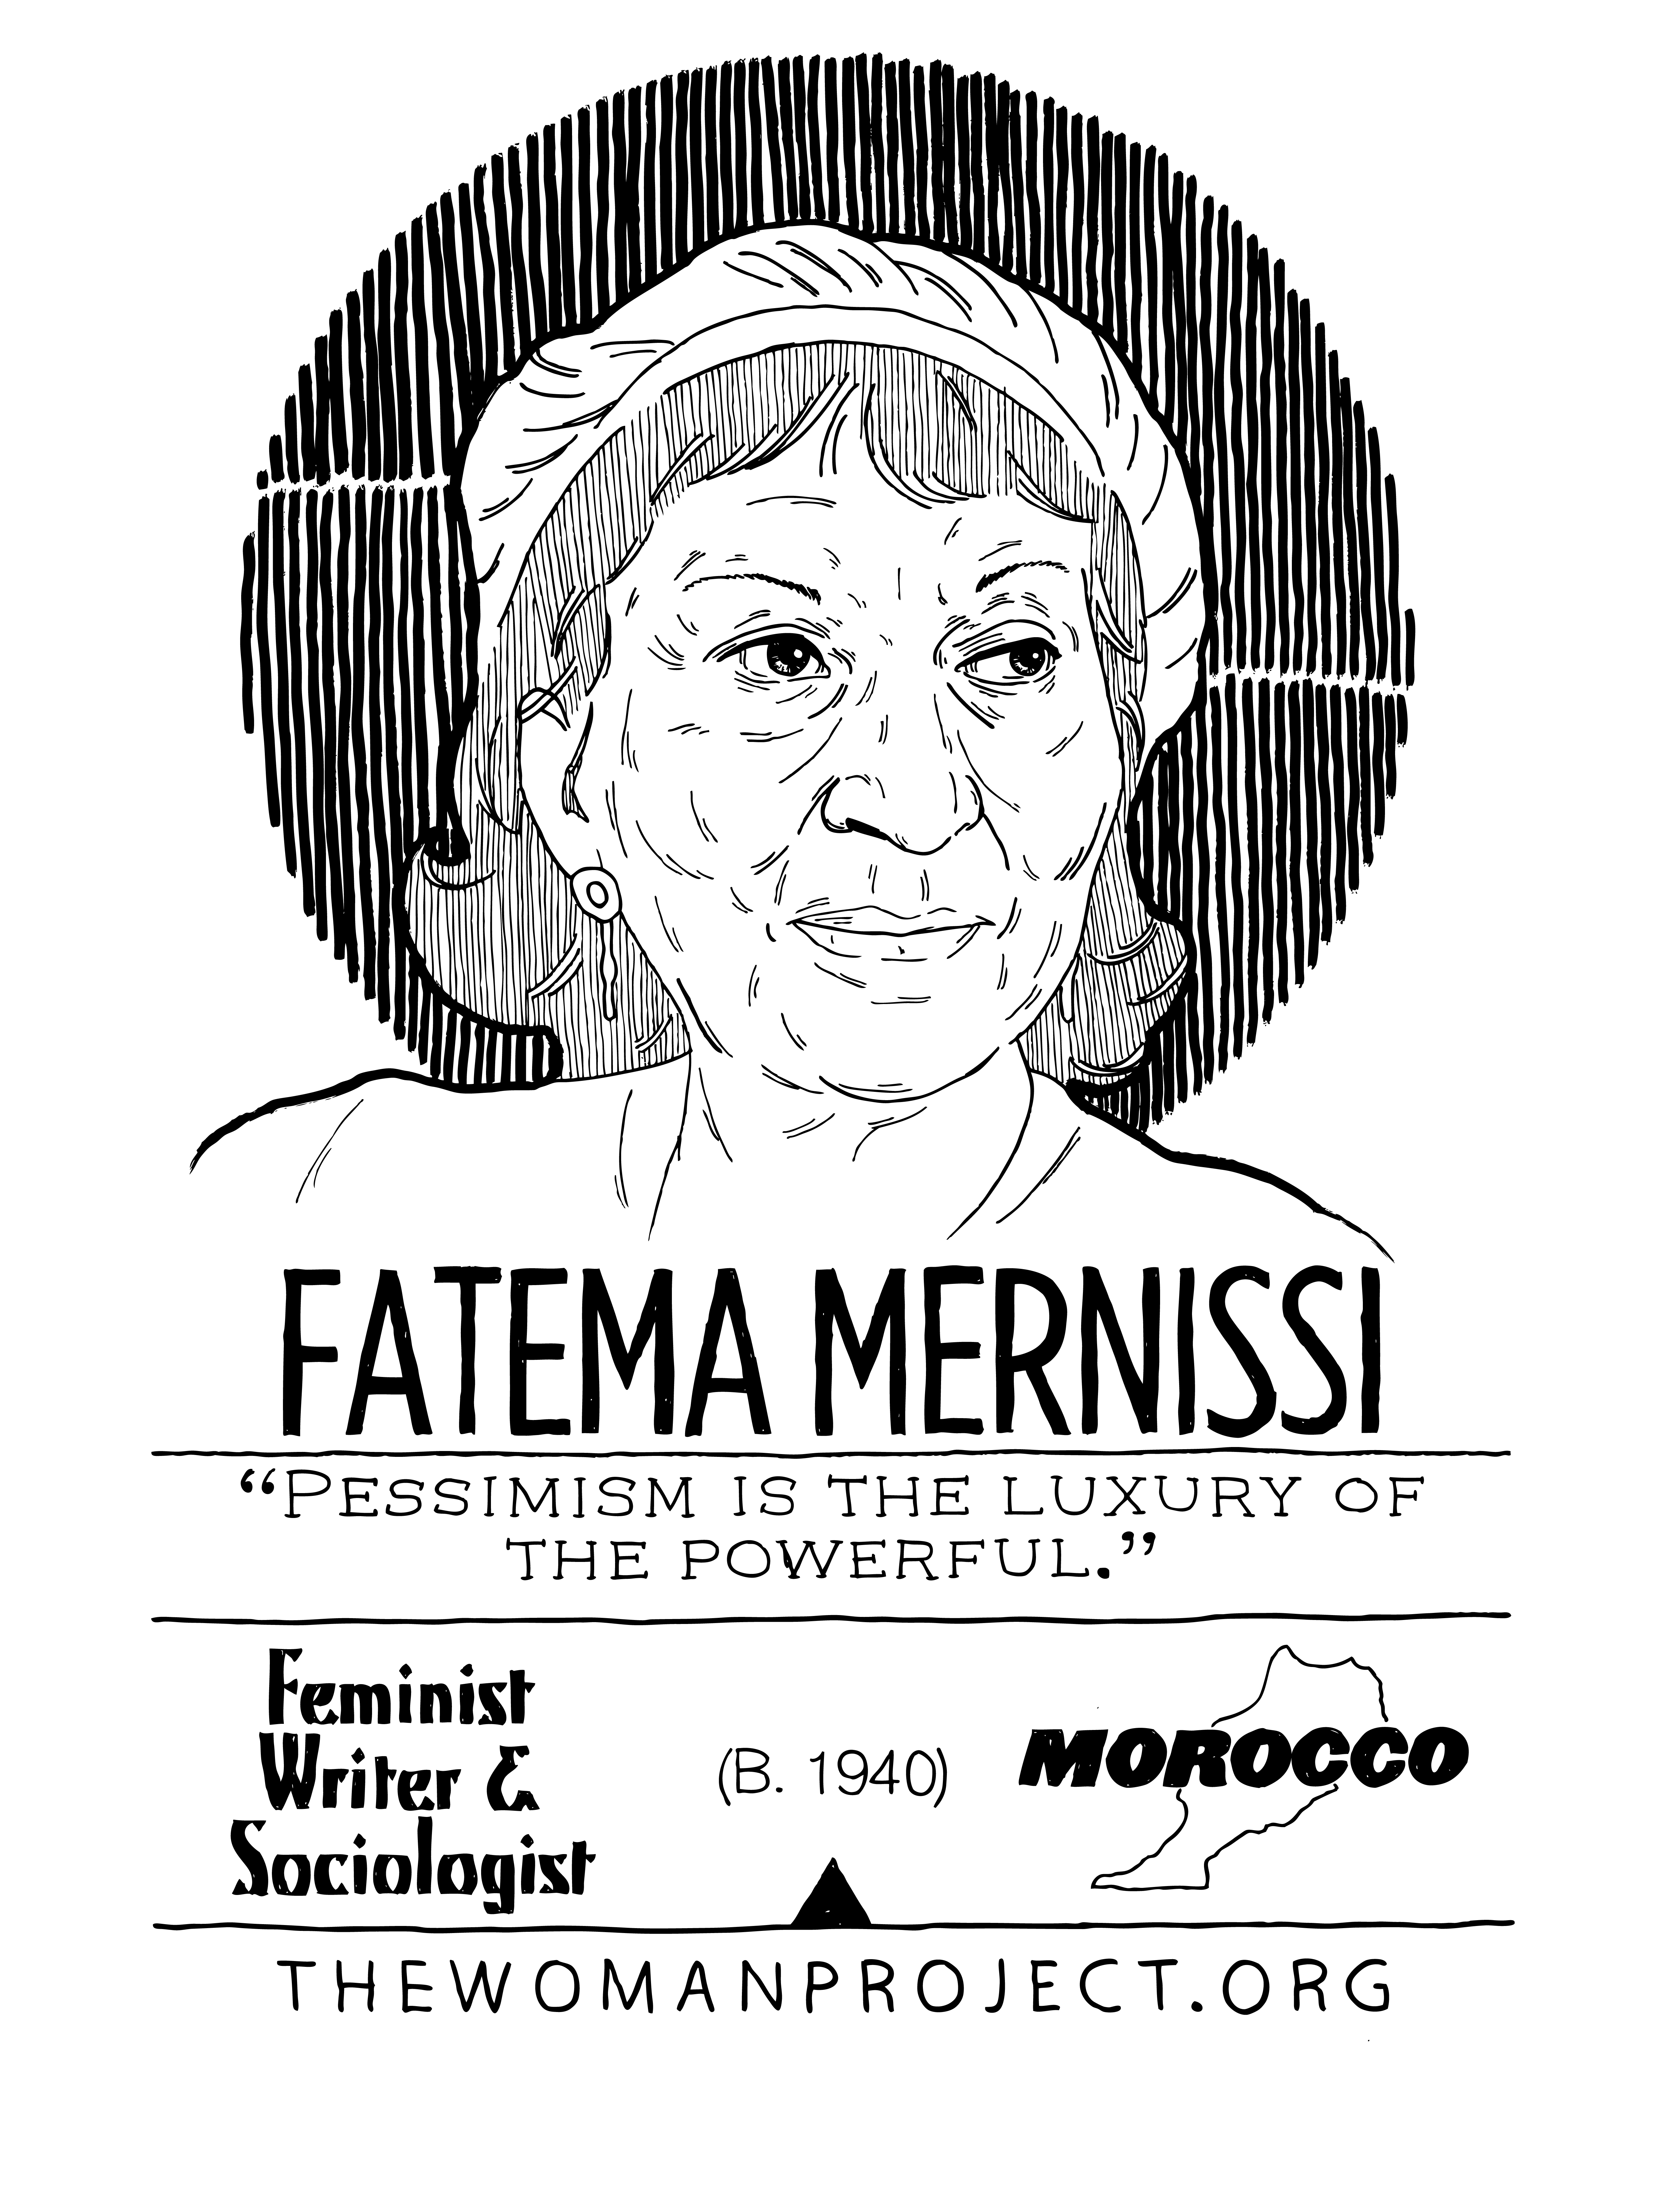 Affiche de Fate Mernissi, écrivaine et sociologue féministe marocaine.